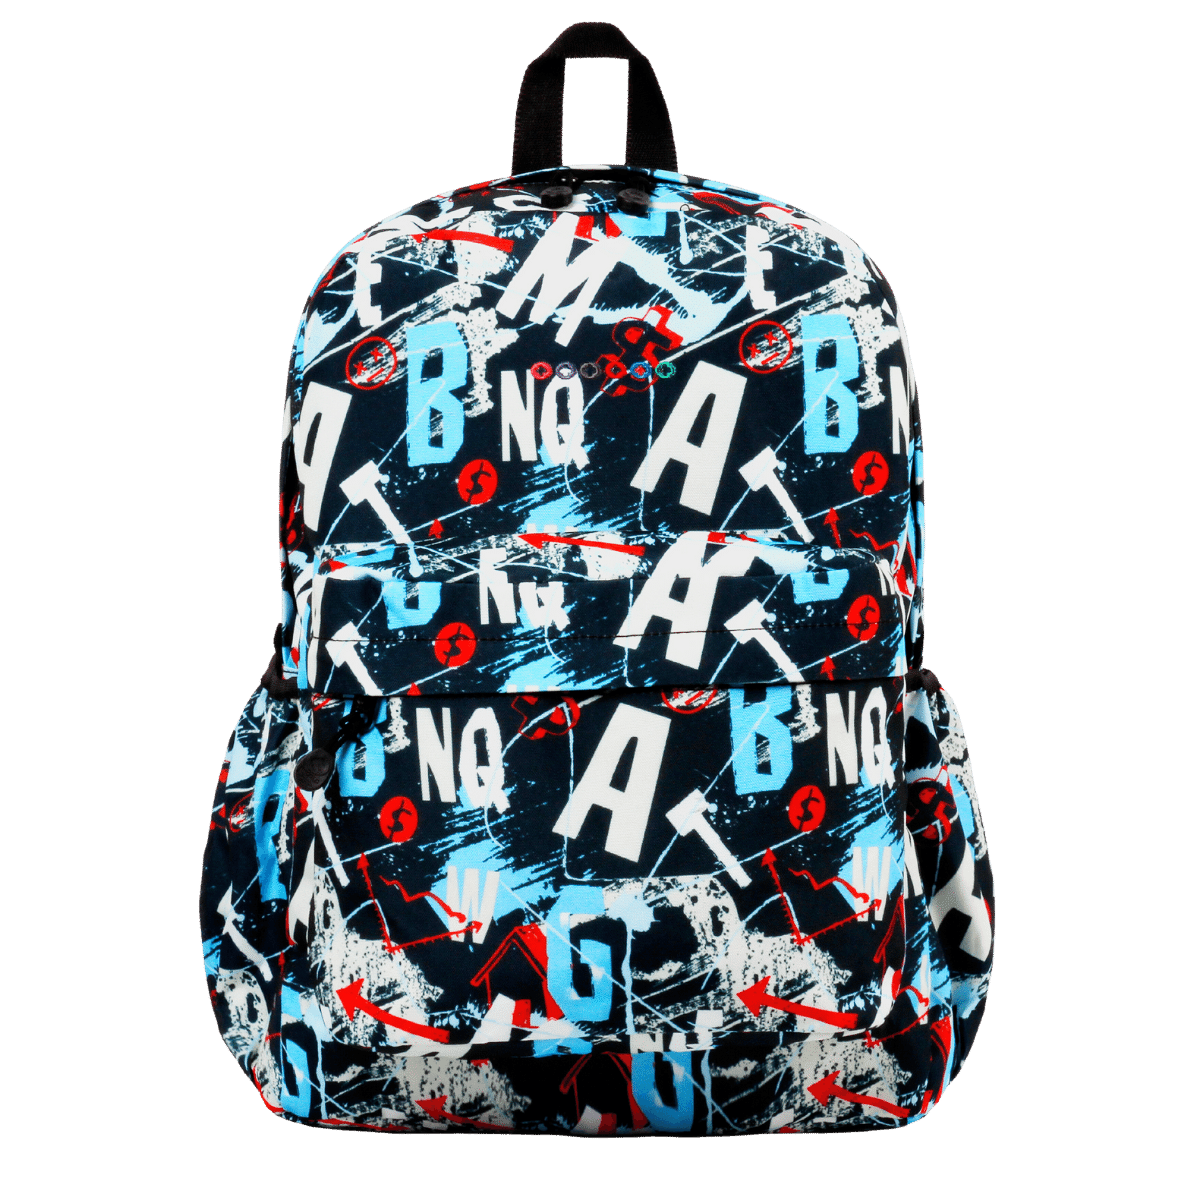 Oz Daypack Backpack - JWorldstore